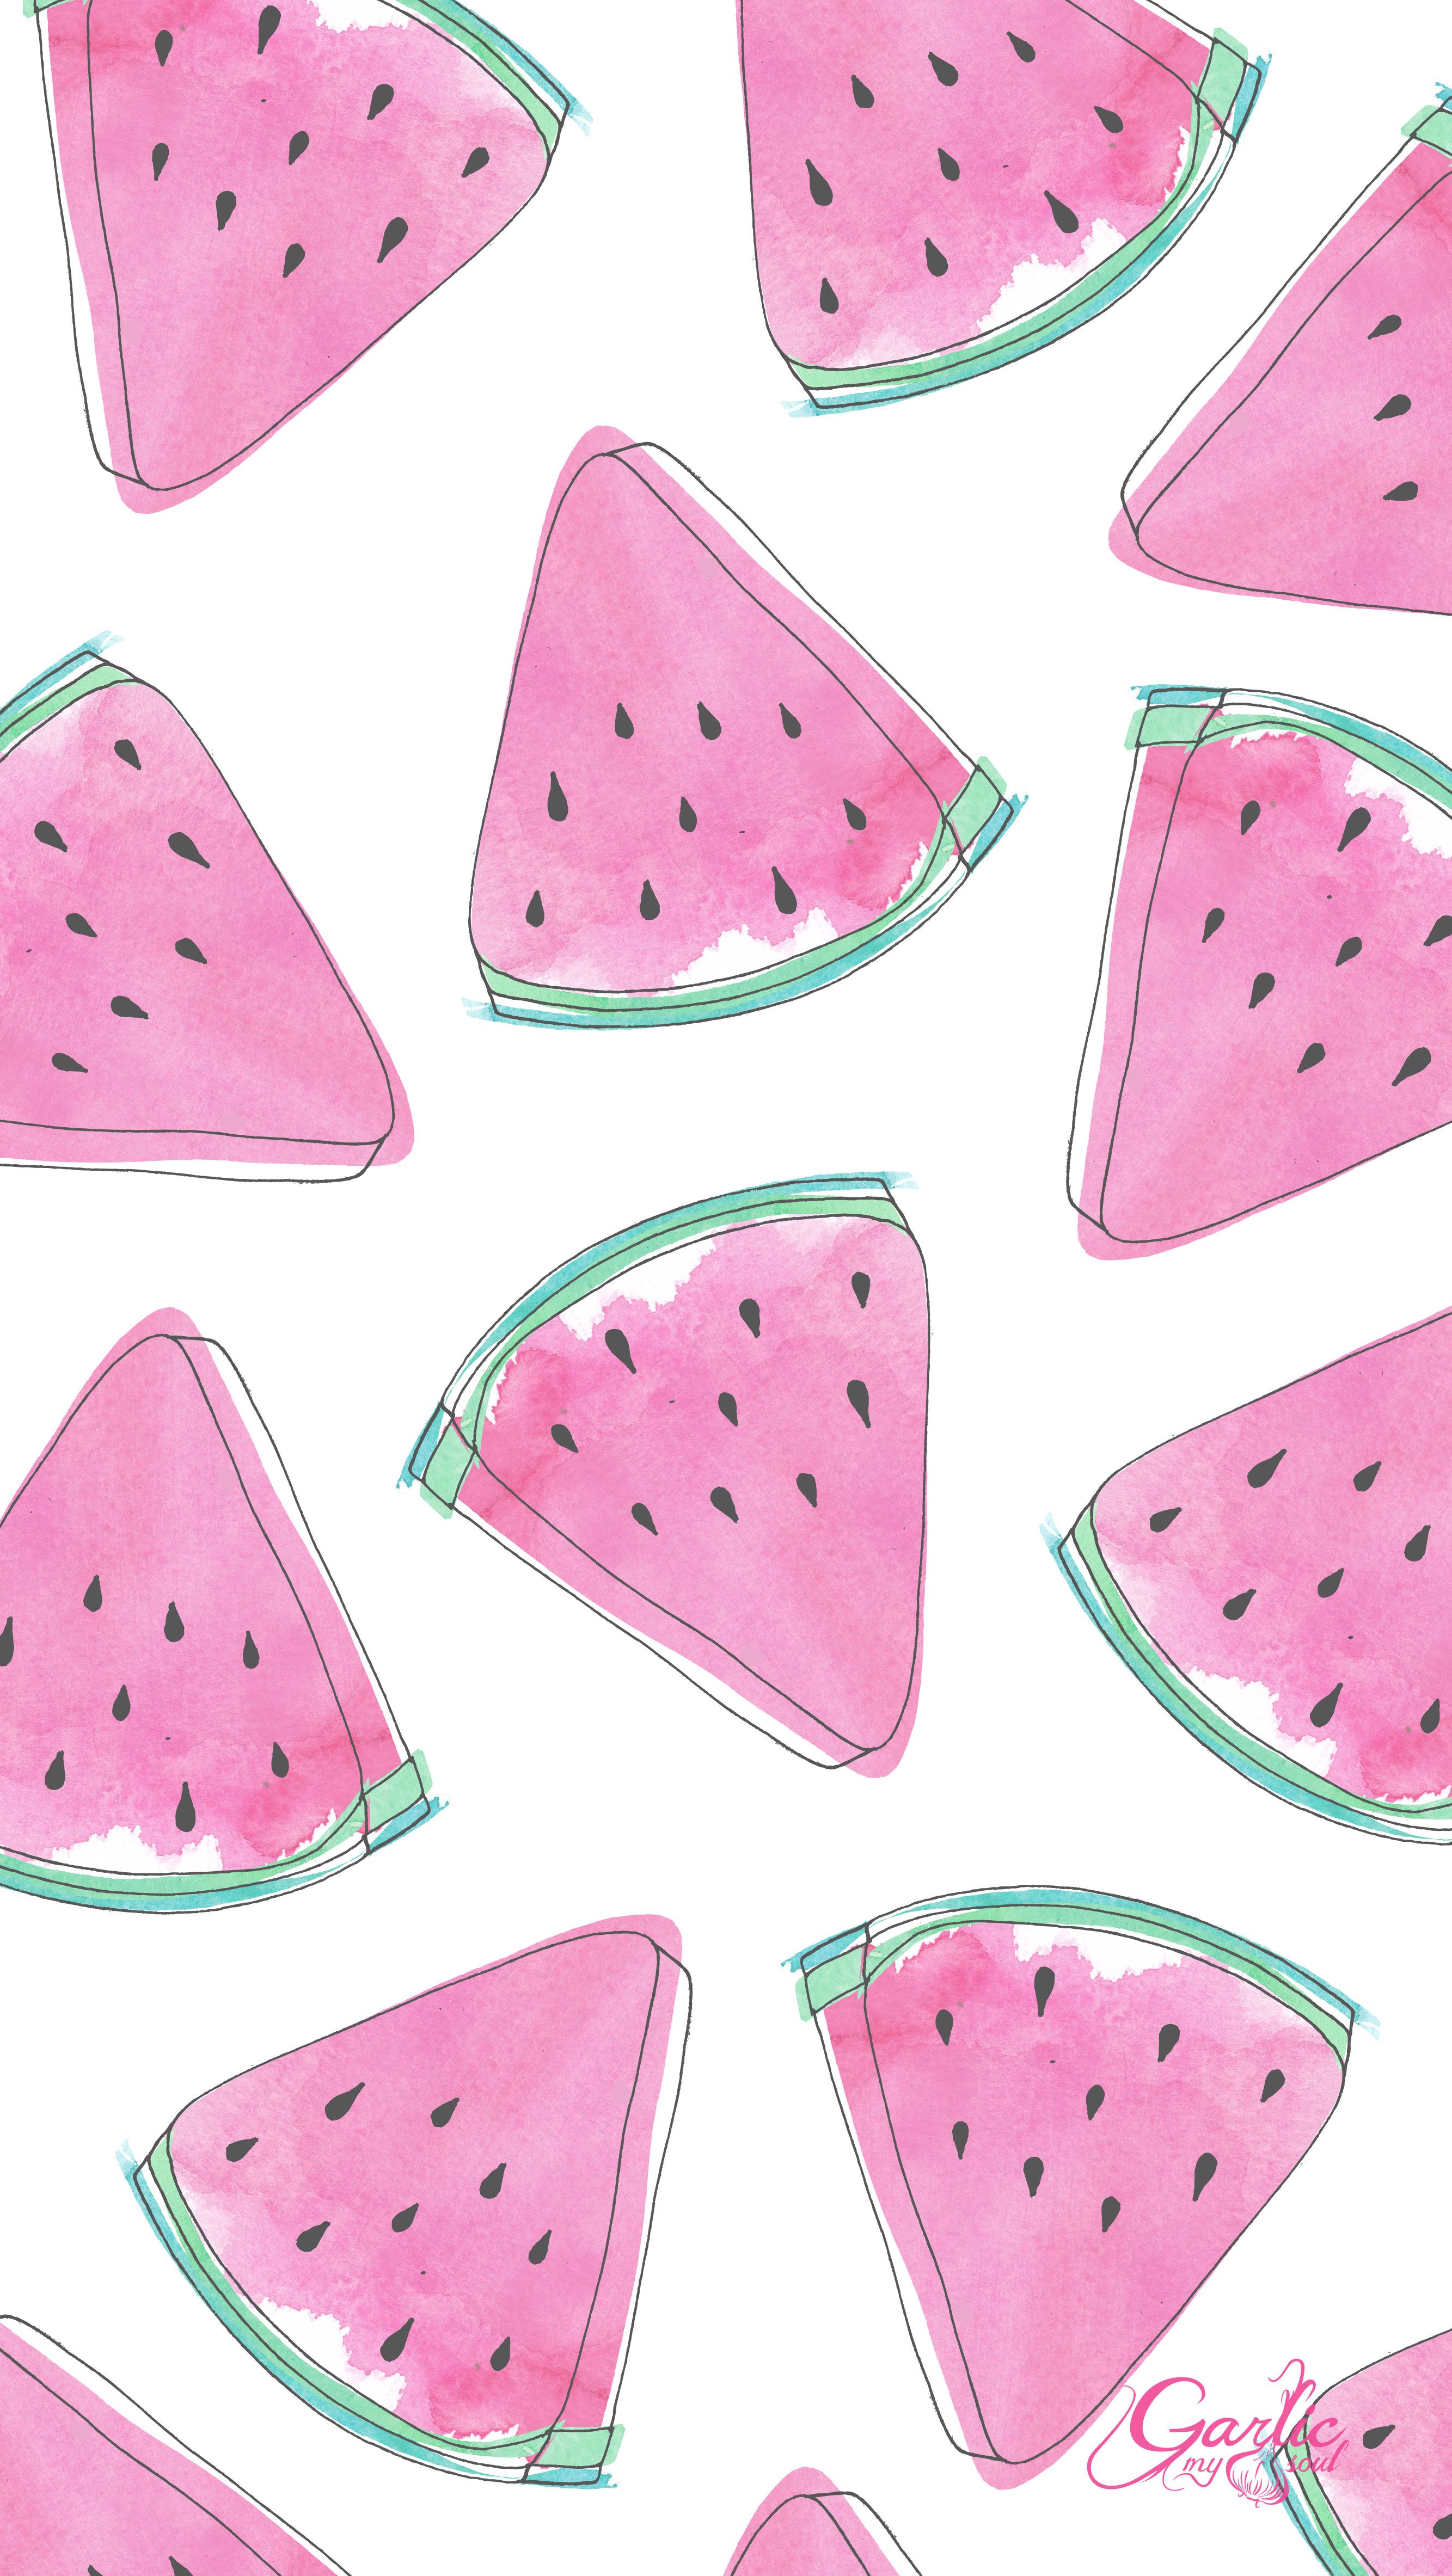 July Desktop Calendar My Soul. Watermelon wallpaper, Pink wallpaper iphone, Wallpaper iphone cute